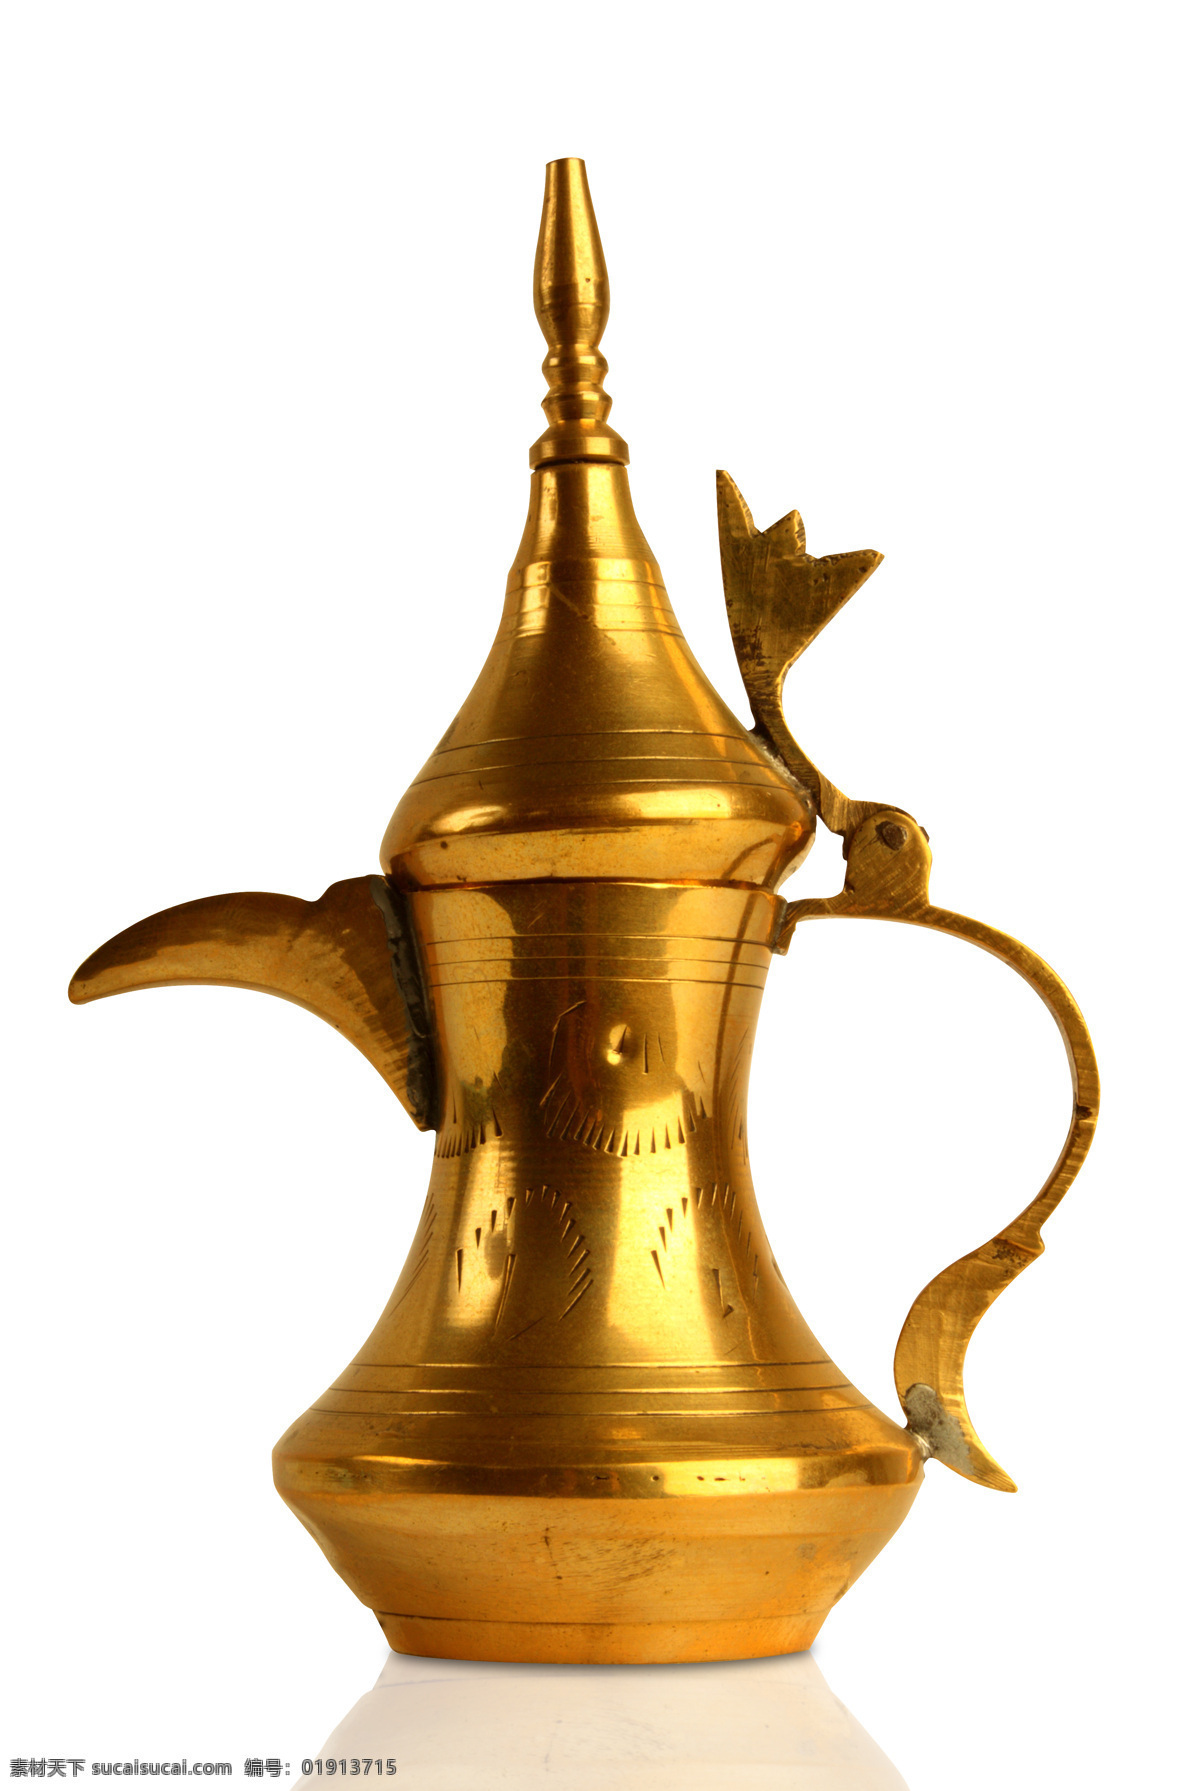 金色的酒壶 金色 酒壶 宗教 阿拉伯 其他类别 生活百科 白色